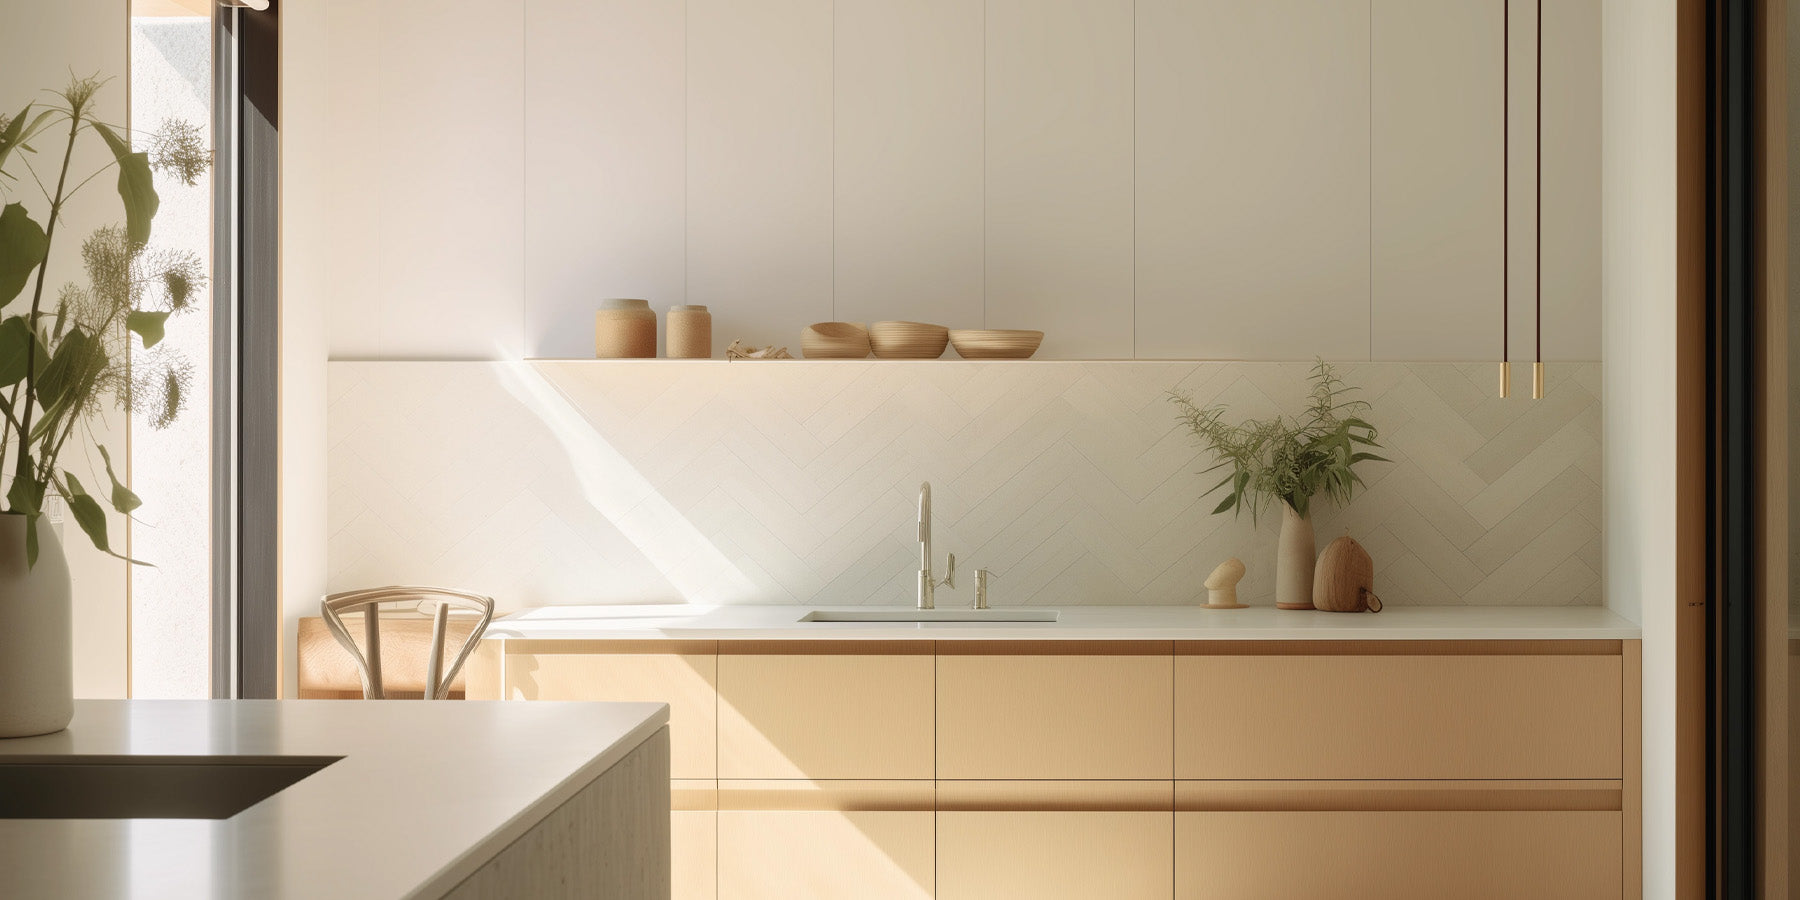 A modern kitchen with a white herringbone tile backsplash